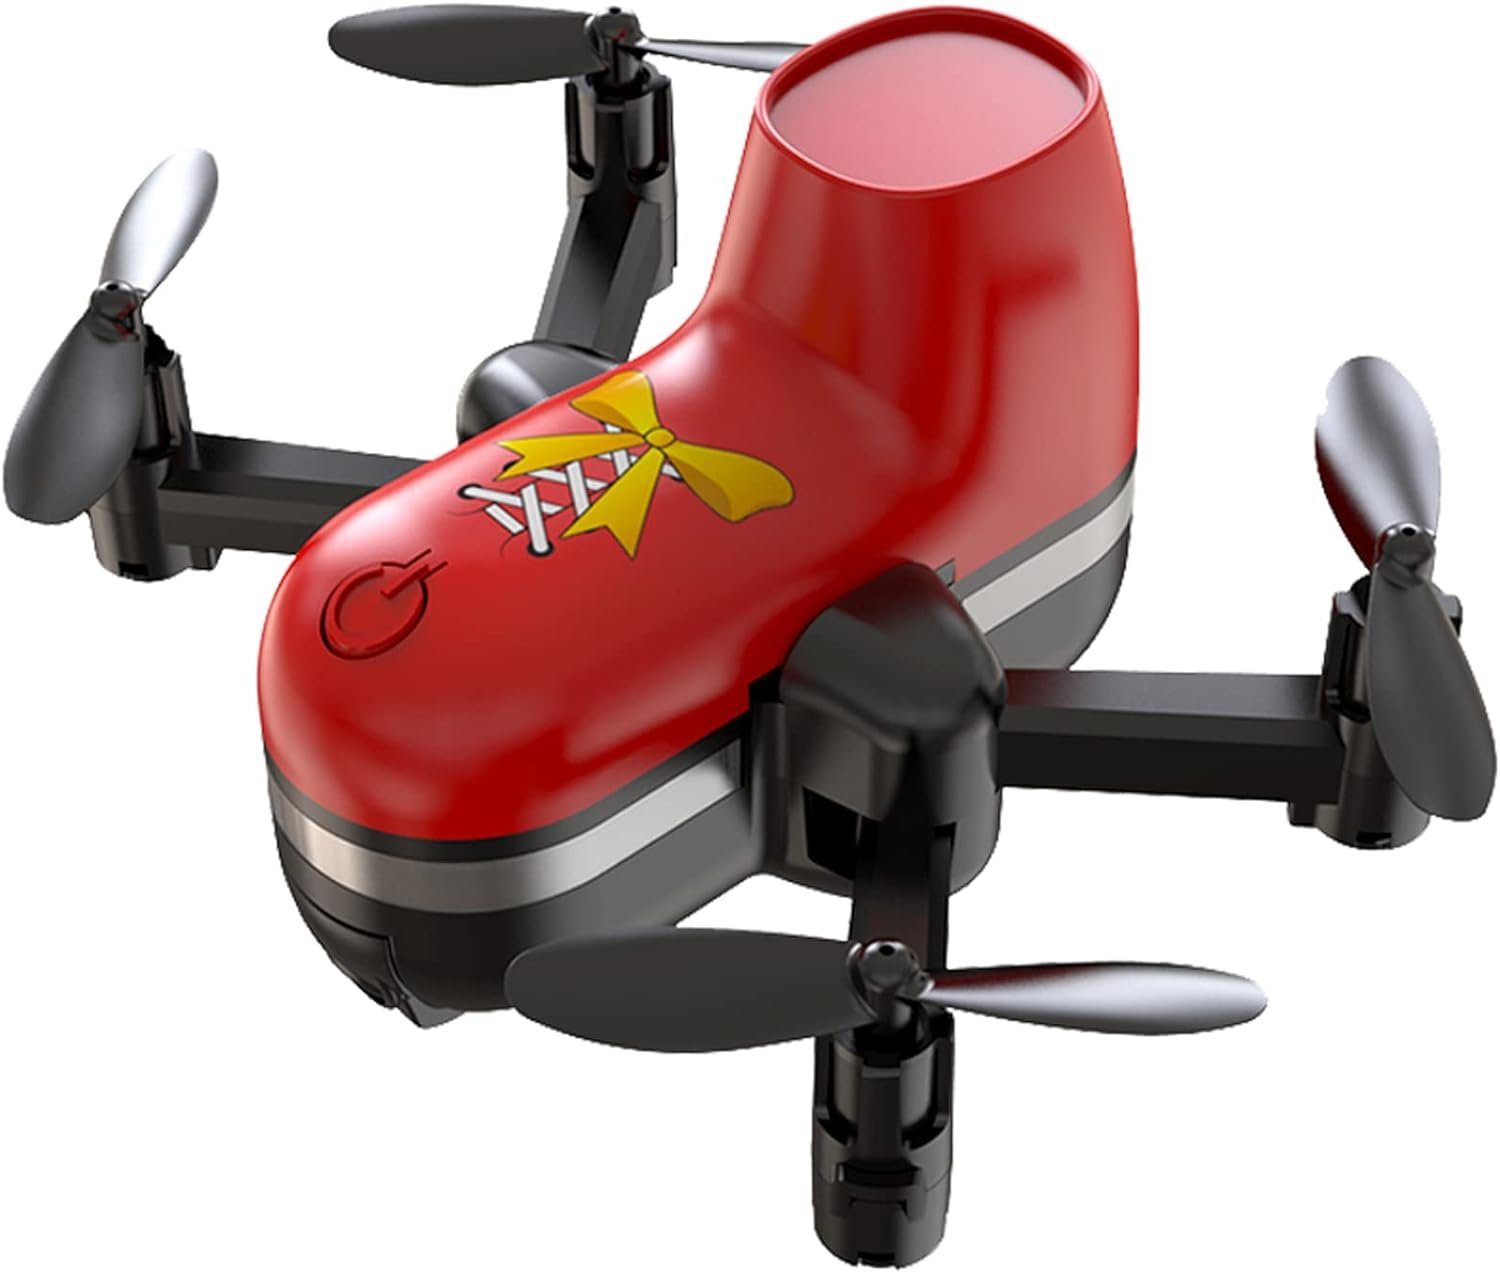 OBEST Drohne (Neues Drohne FernsteuerDrohne Mini Landluft) für für Kinder Spielzeug